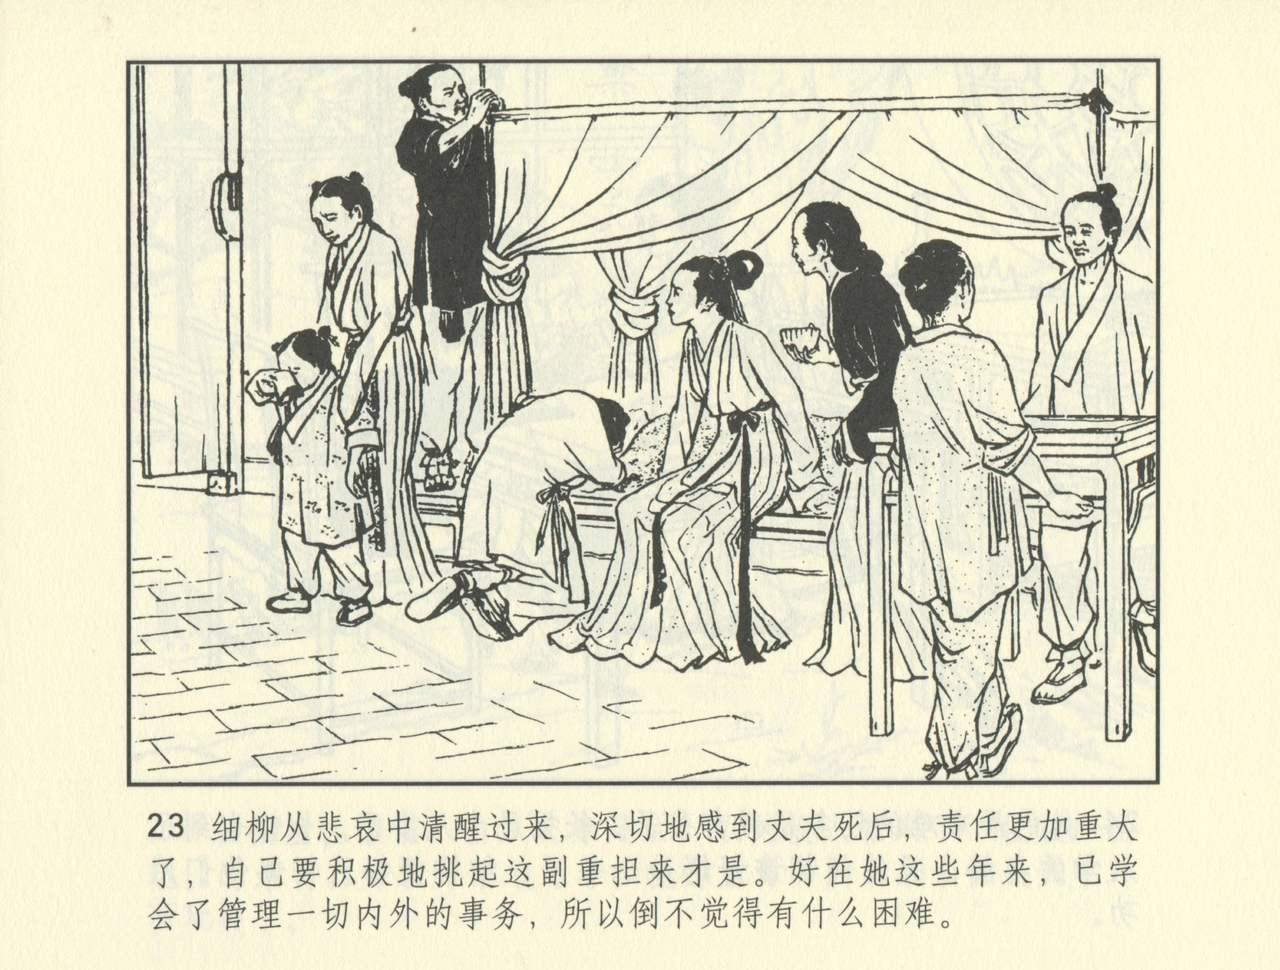 聊斋志异 张玮等绘 天津人民美术出版社 卷二十一 ~ 三十 495